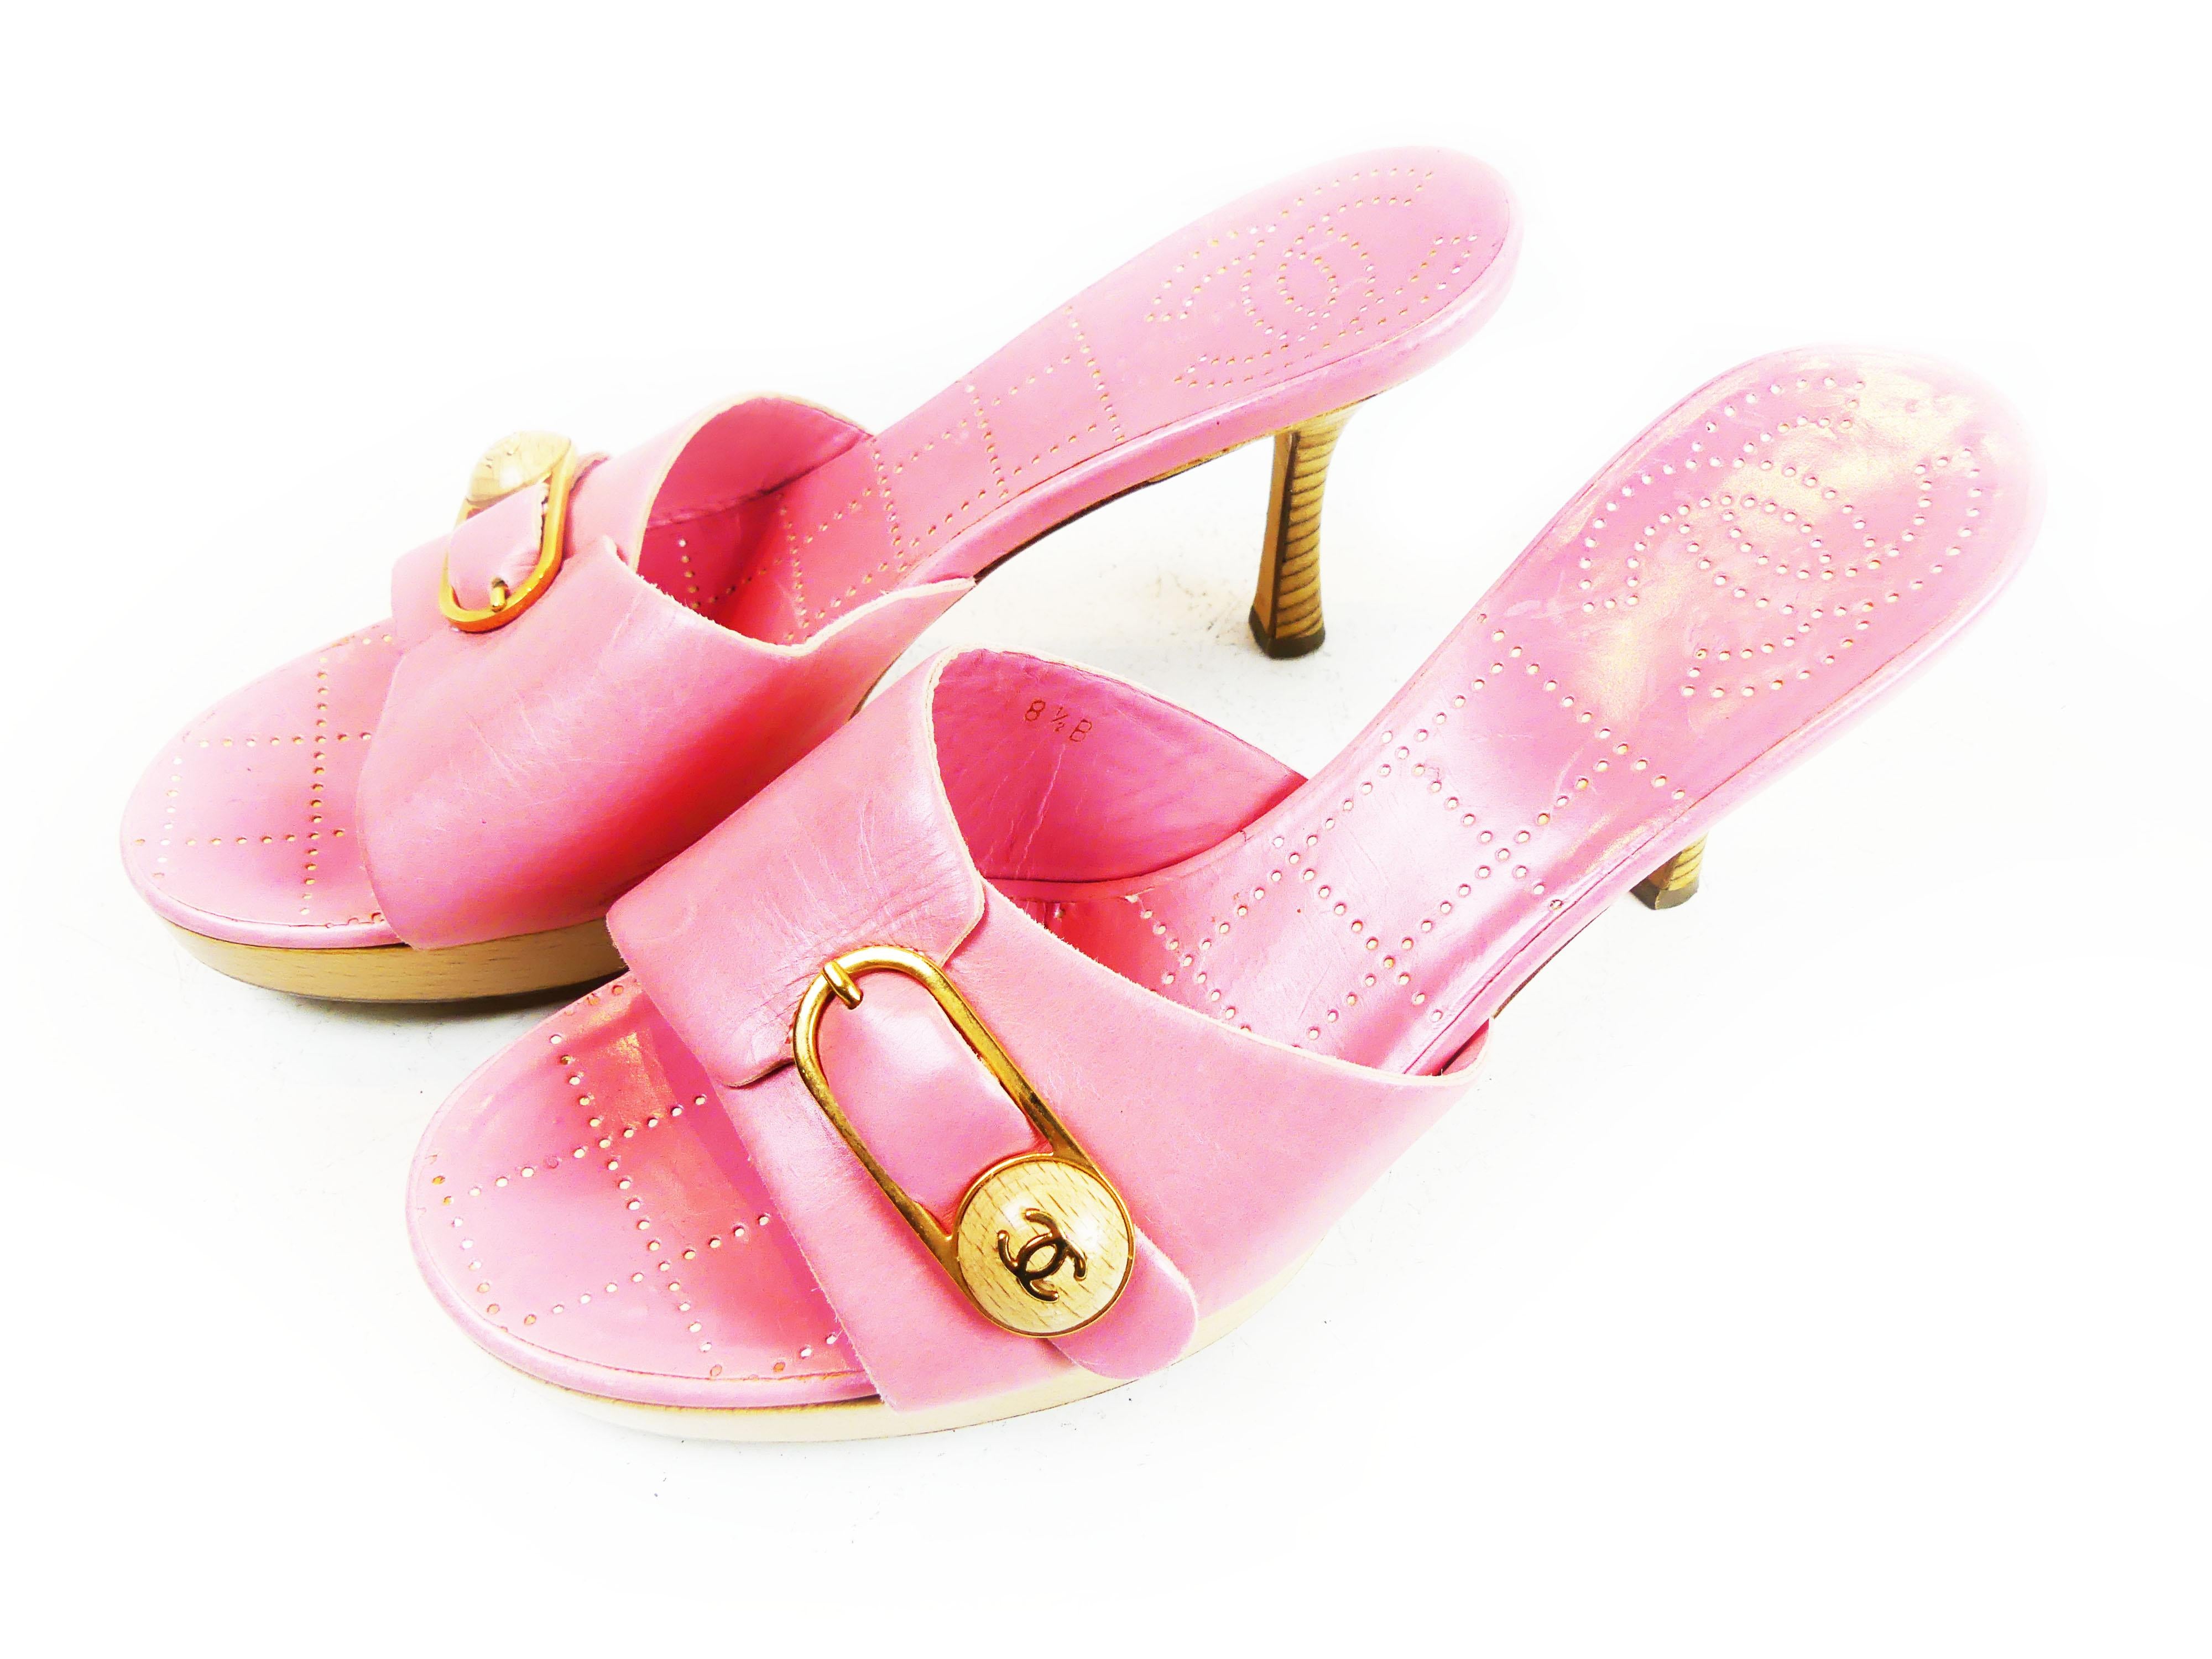 Chanel Candy Pink Heeled Slides - Size 38.5 EUR / 8.5 US